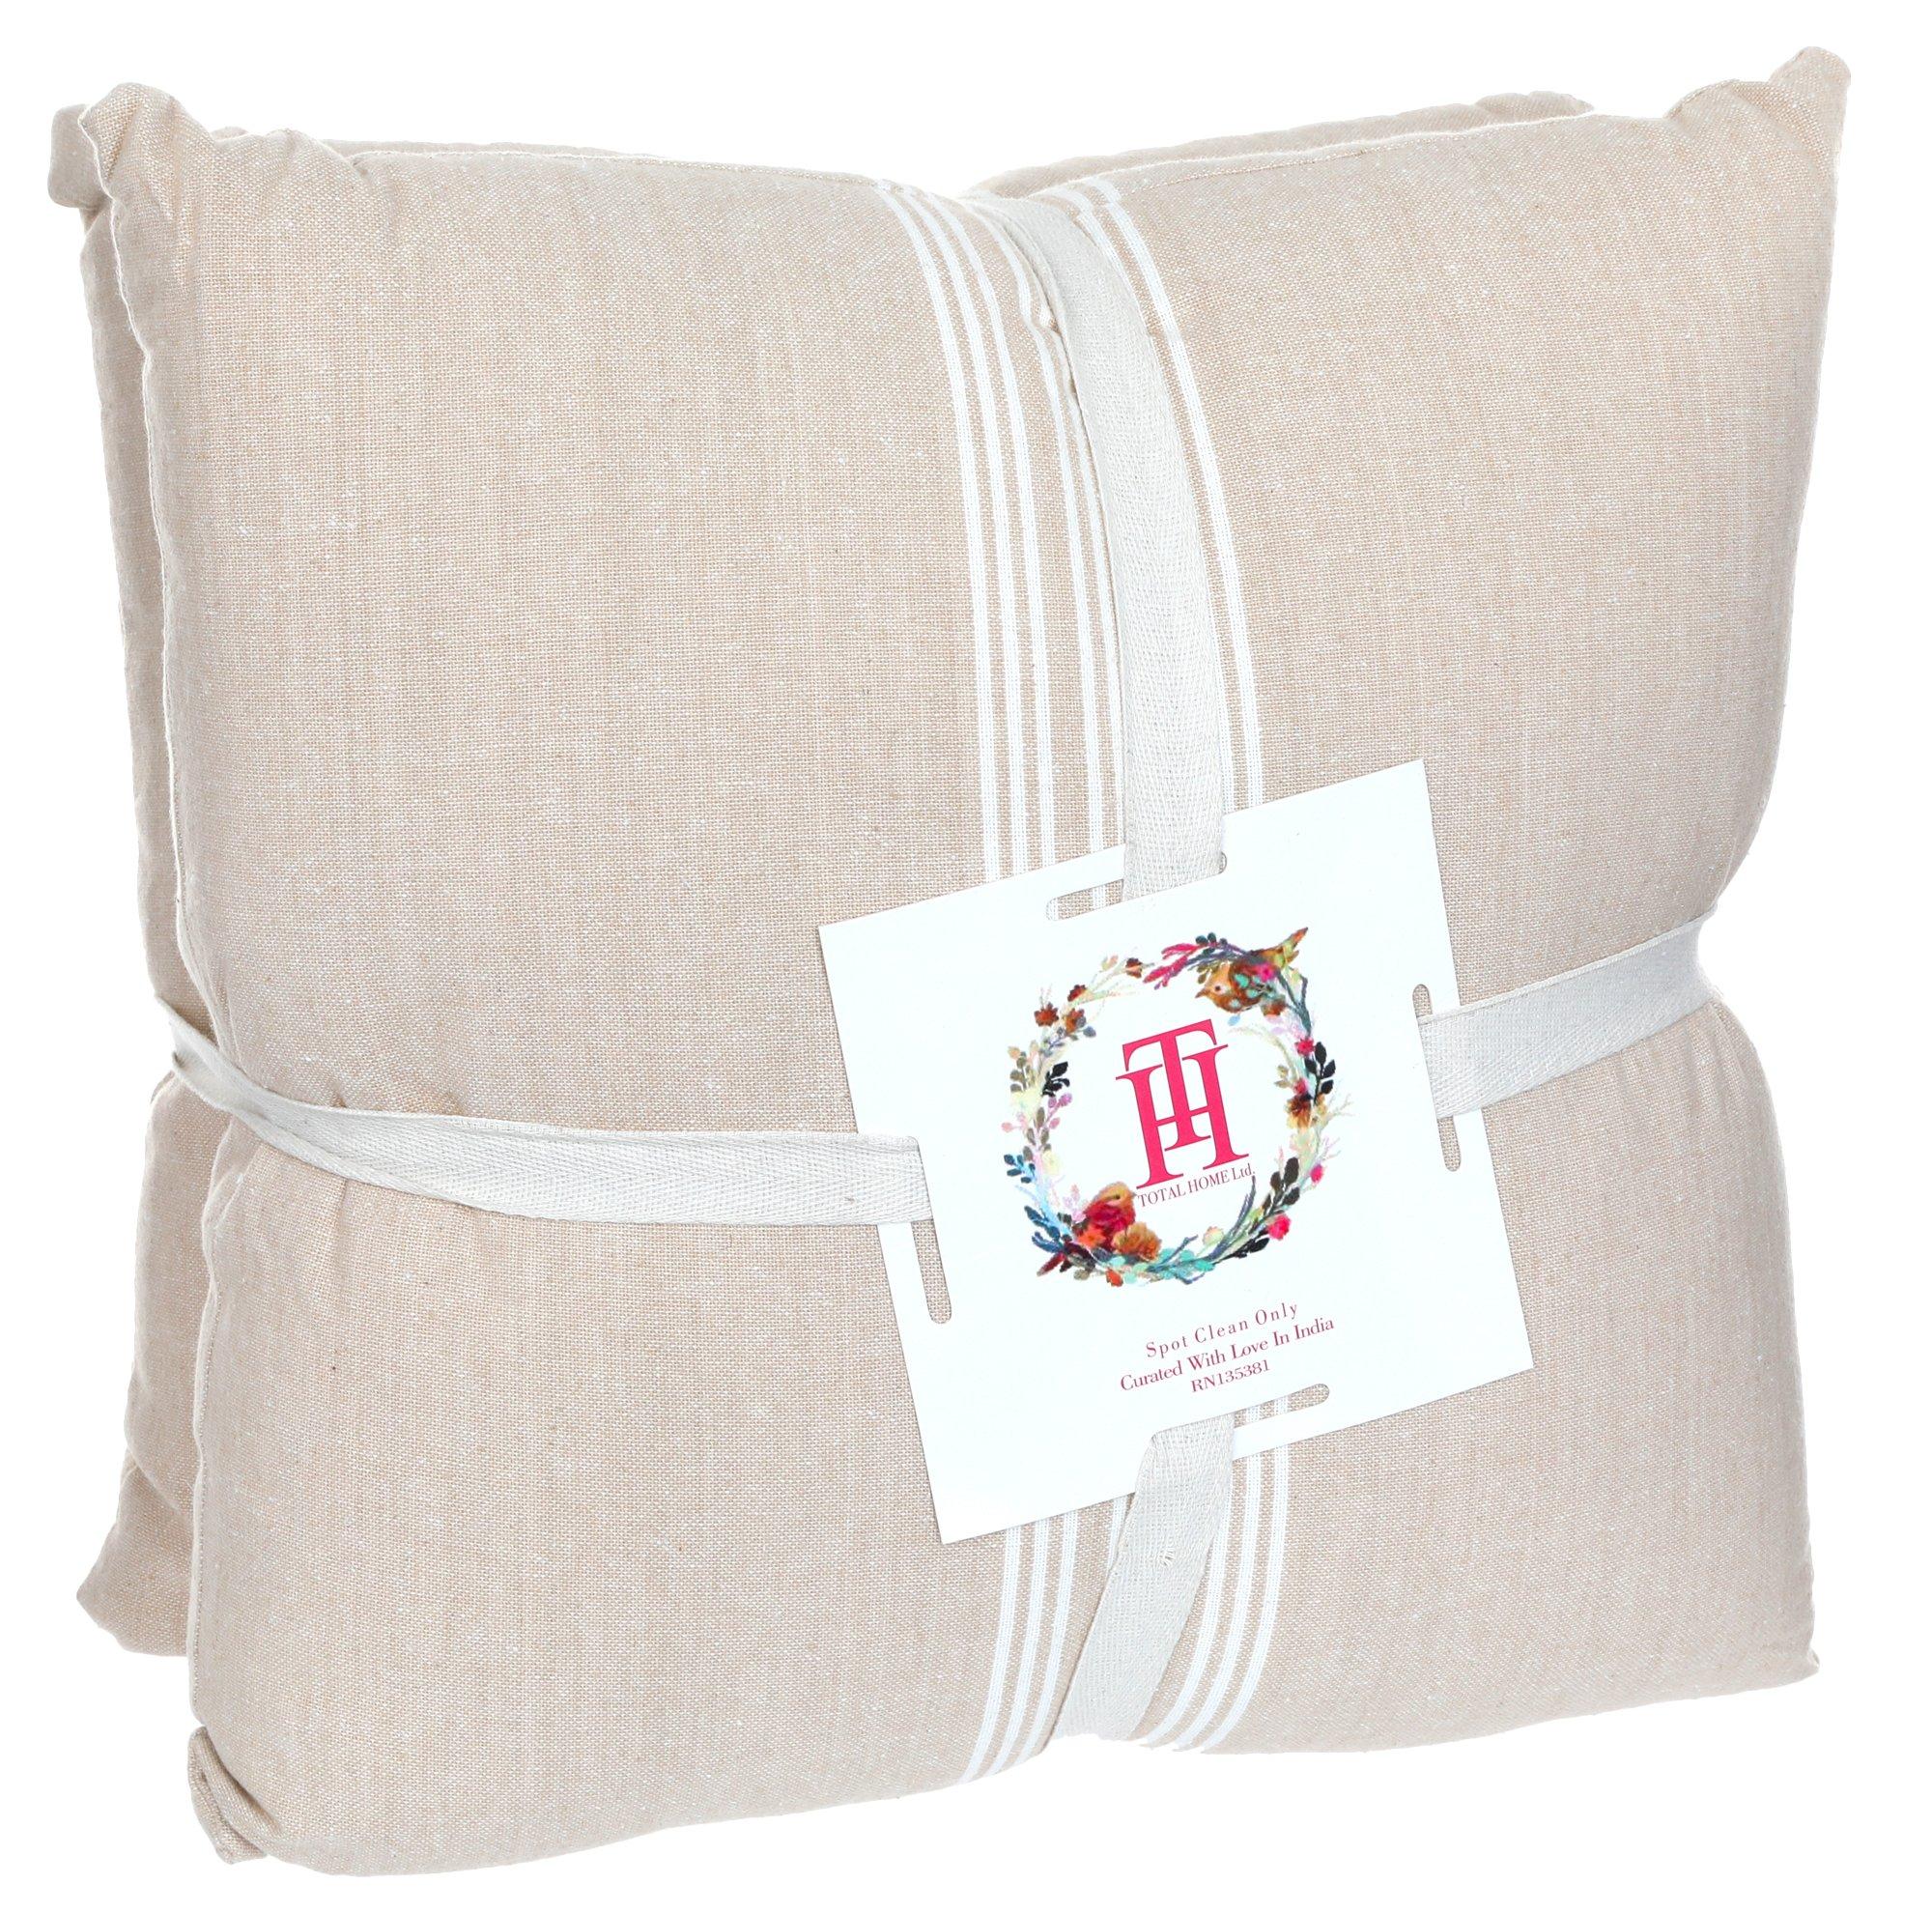 2 Pk Stripe Decorative Throw Pillows